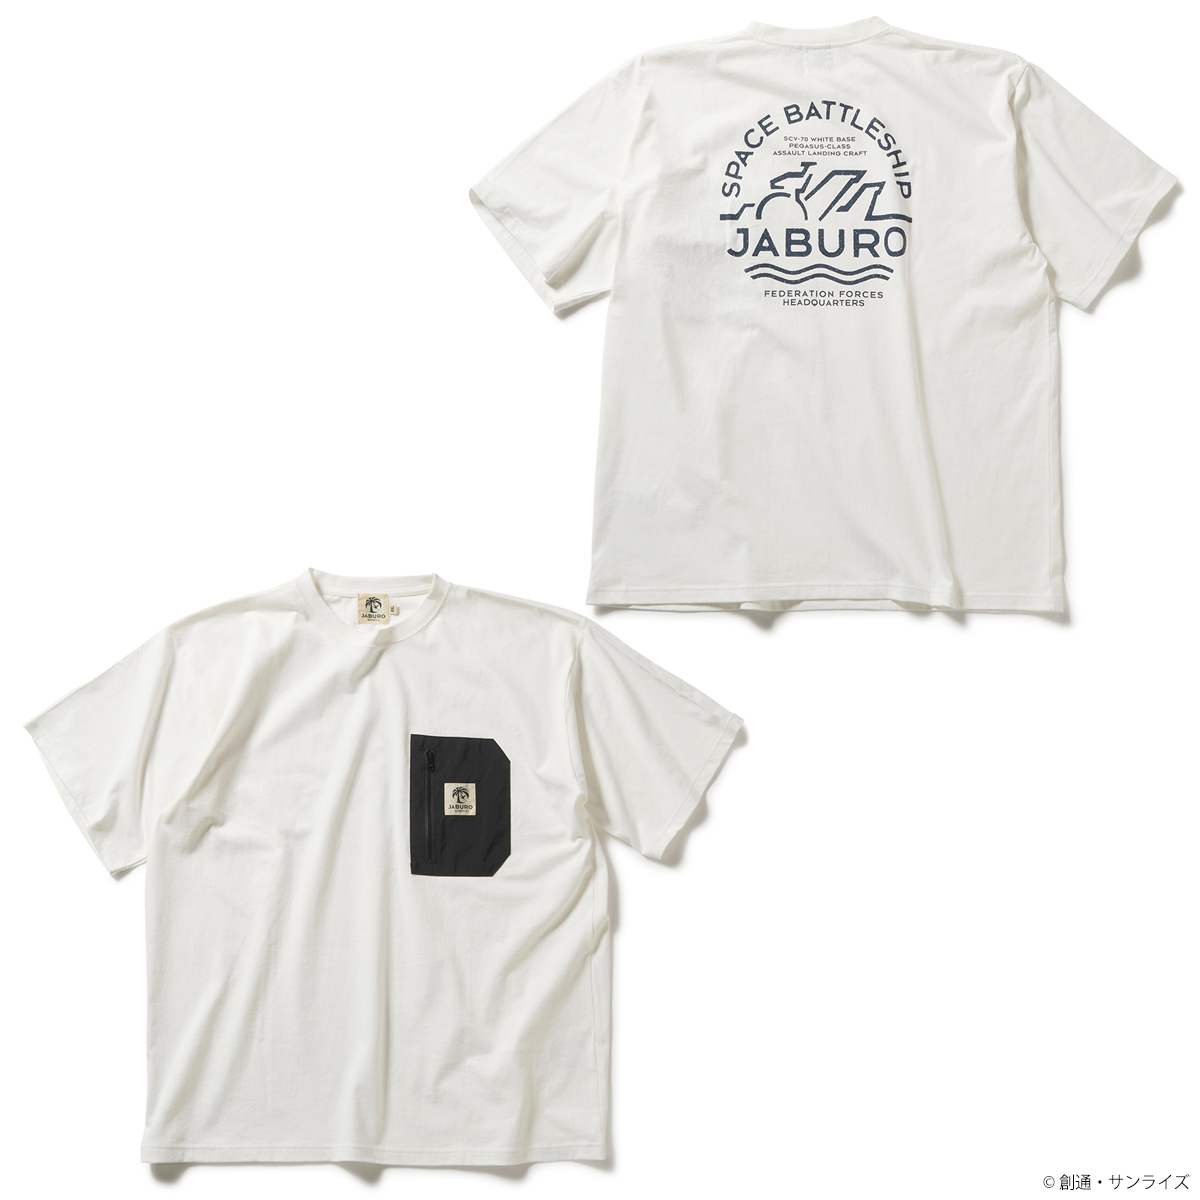 『機動戦士ガンダム』×アウトドアテイストの 新ブランド“JABURO” 第1弾コレクションを展開